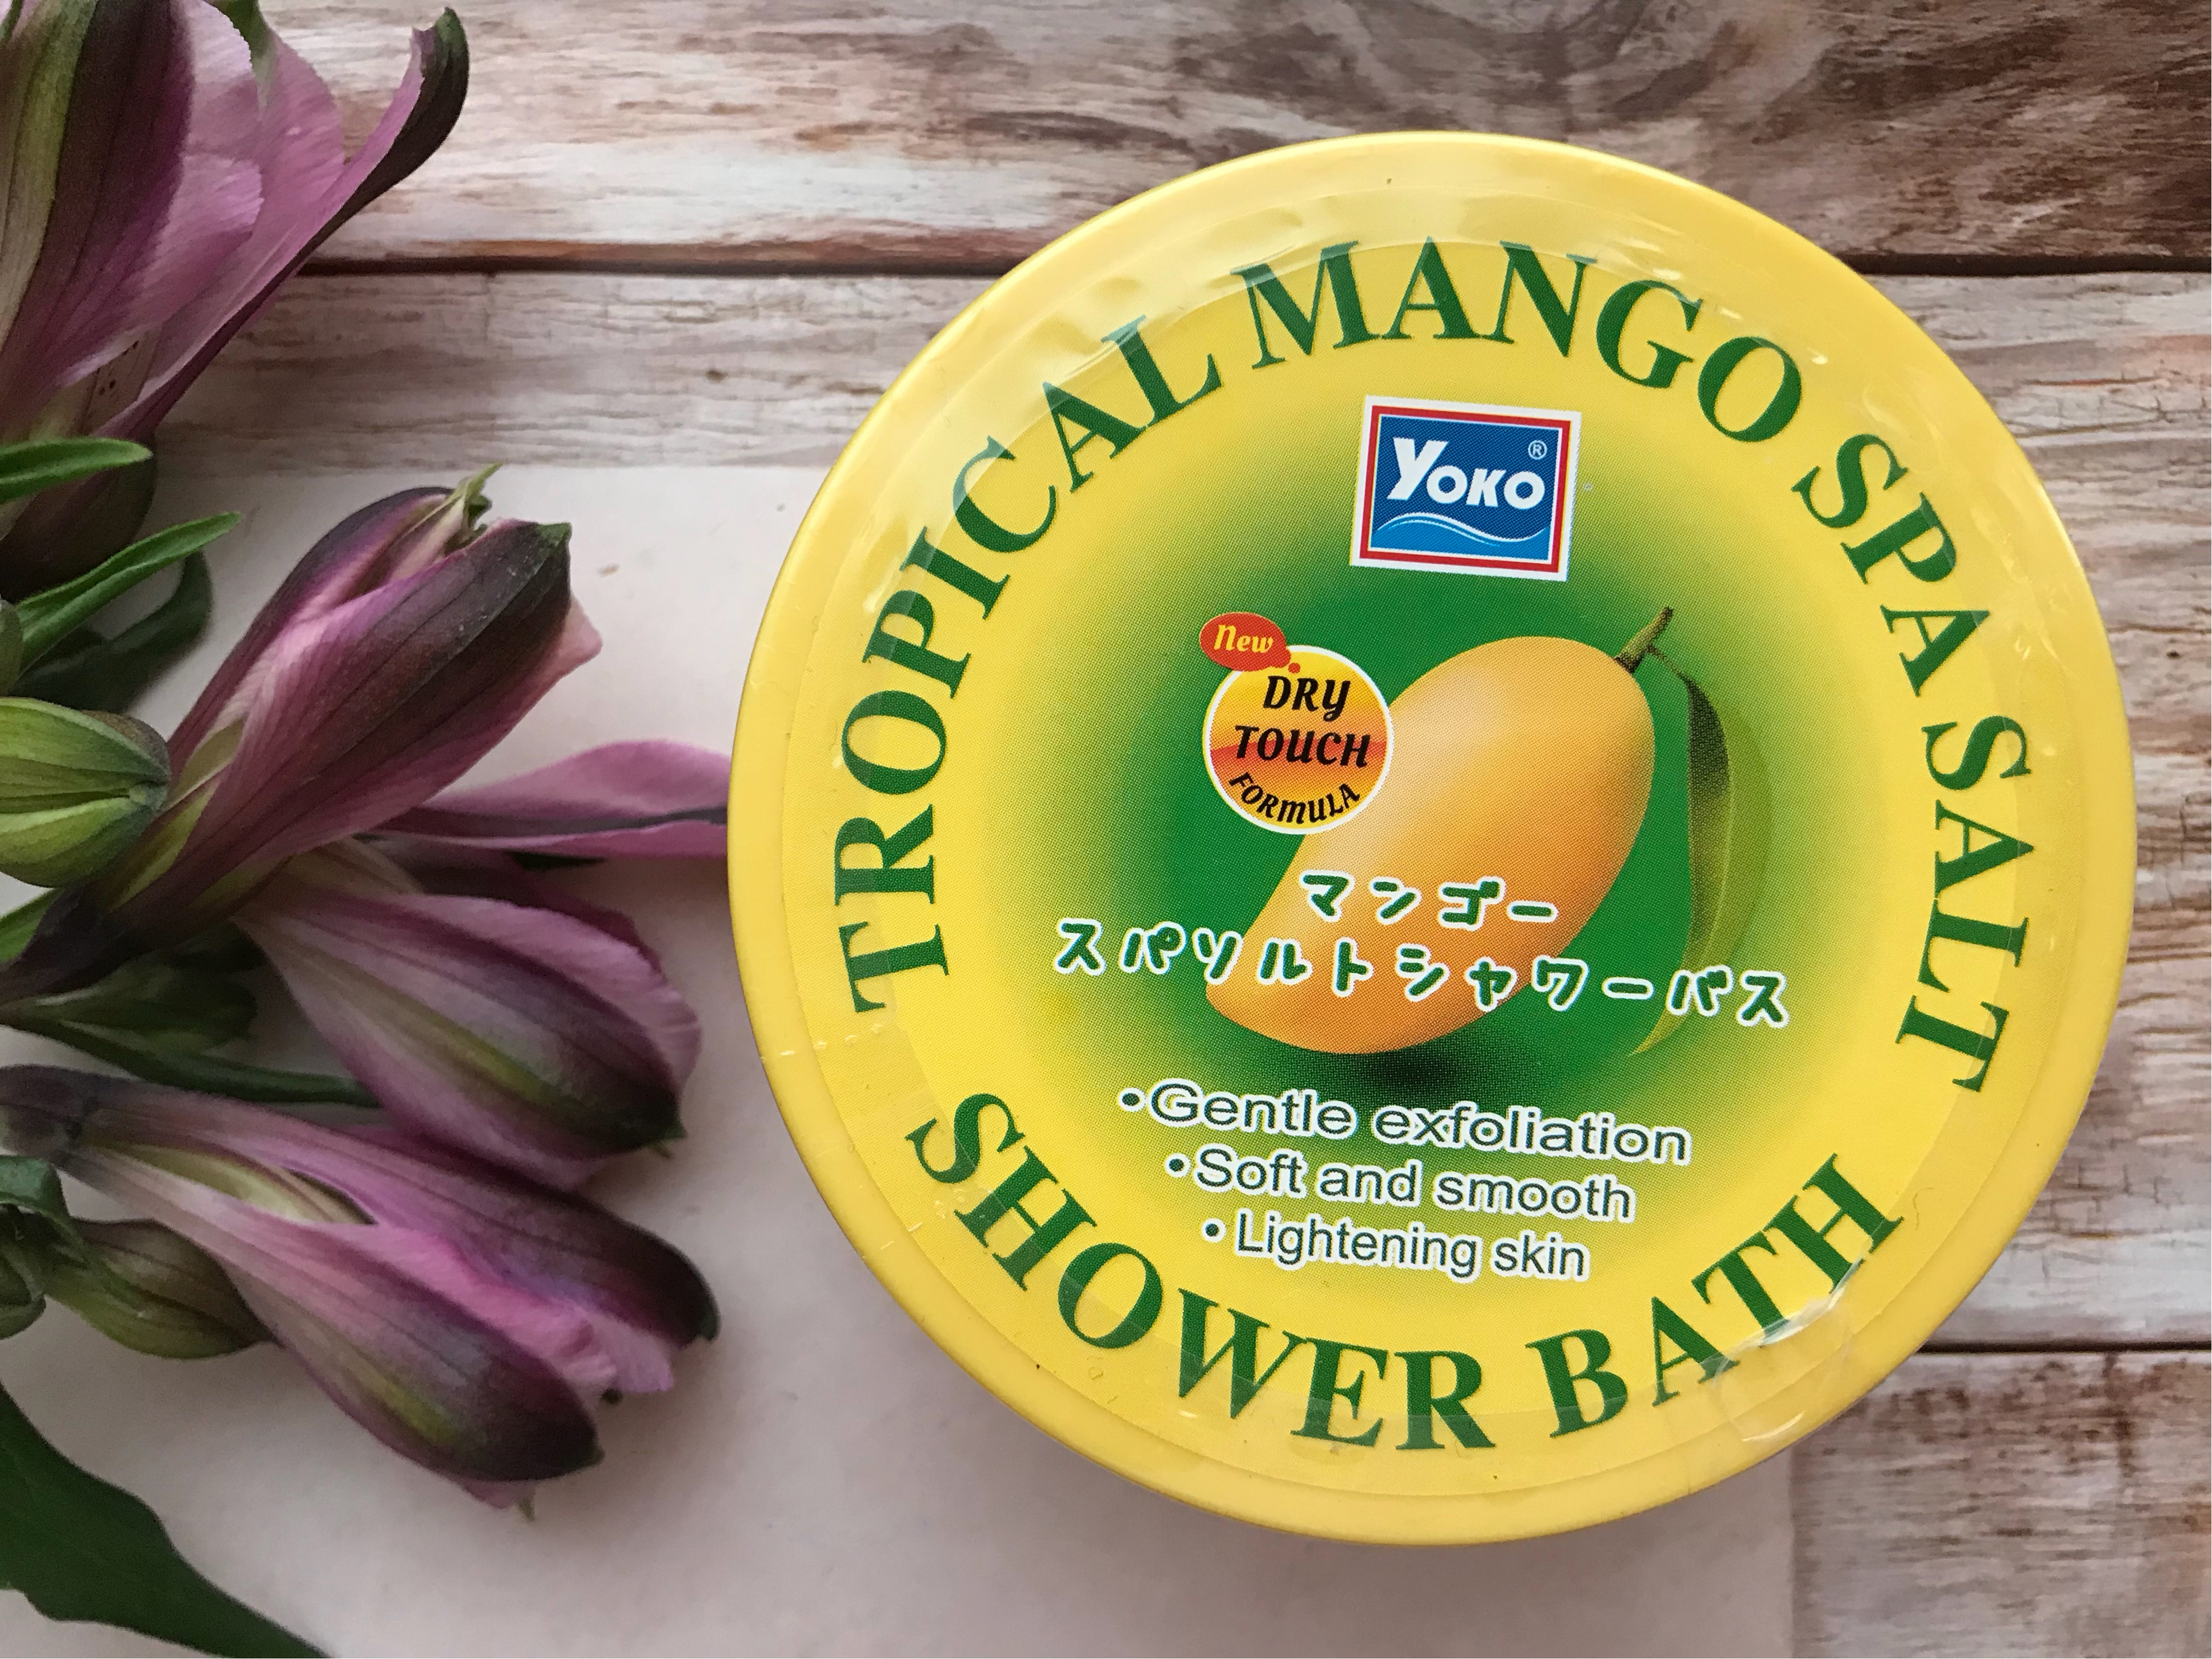 Тайский солевой спа-скраб для тела Yoko Tropical Mango Spa Salt Shower Bath 240 гр. тайская косметика в москве